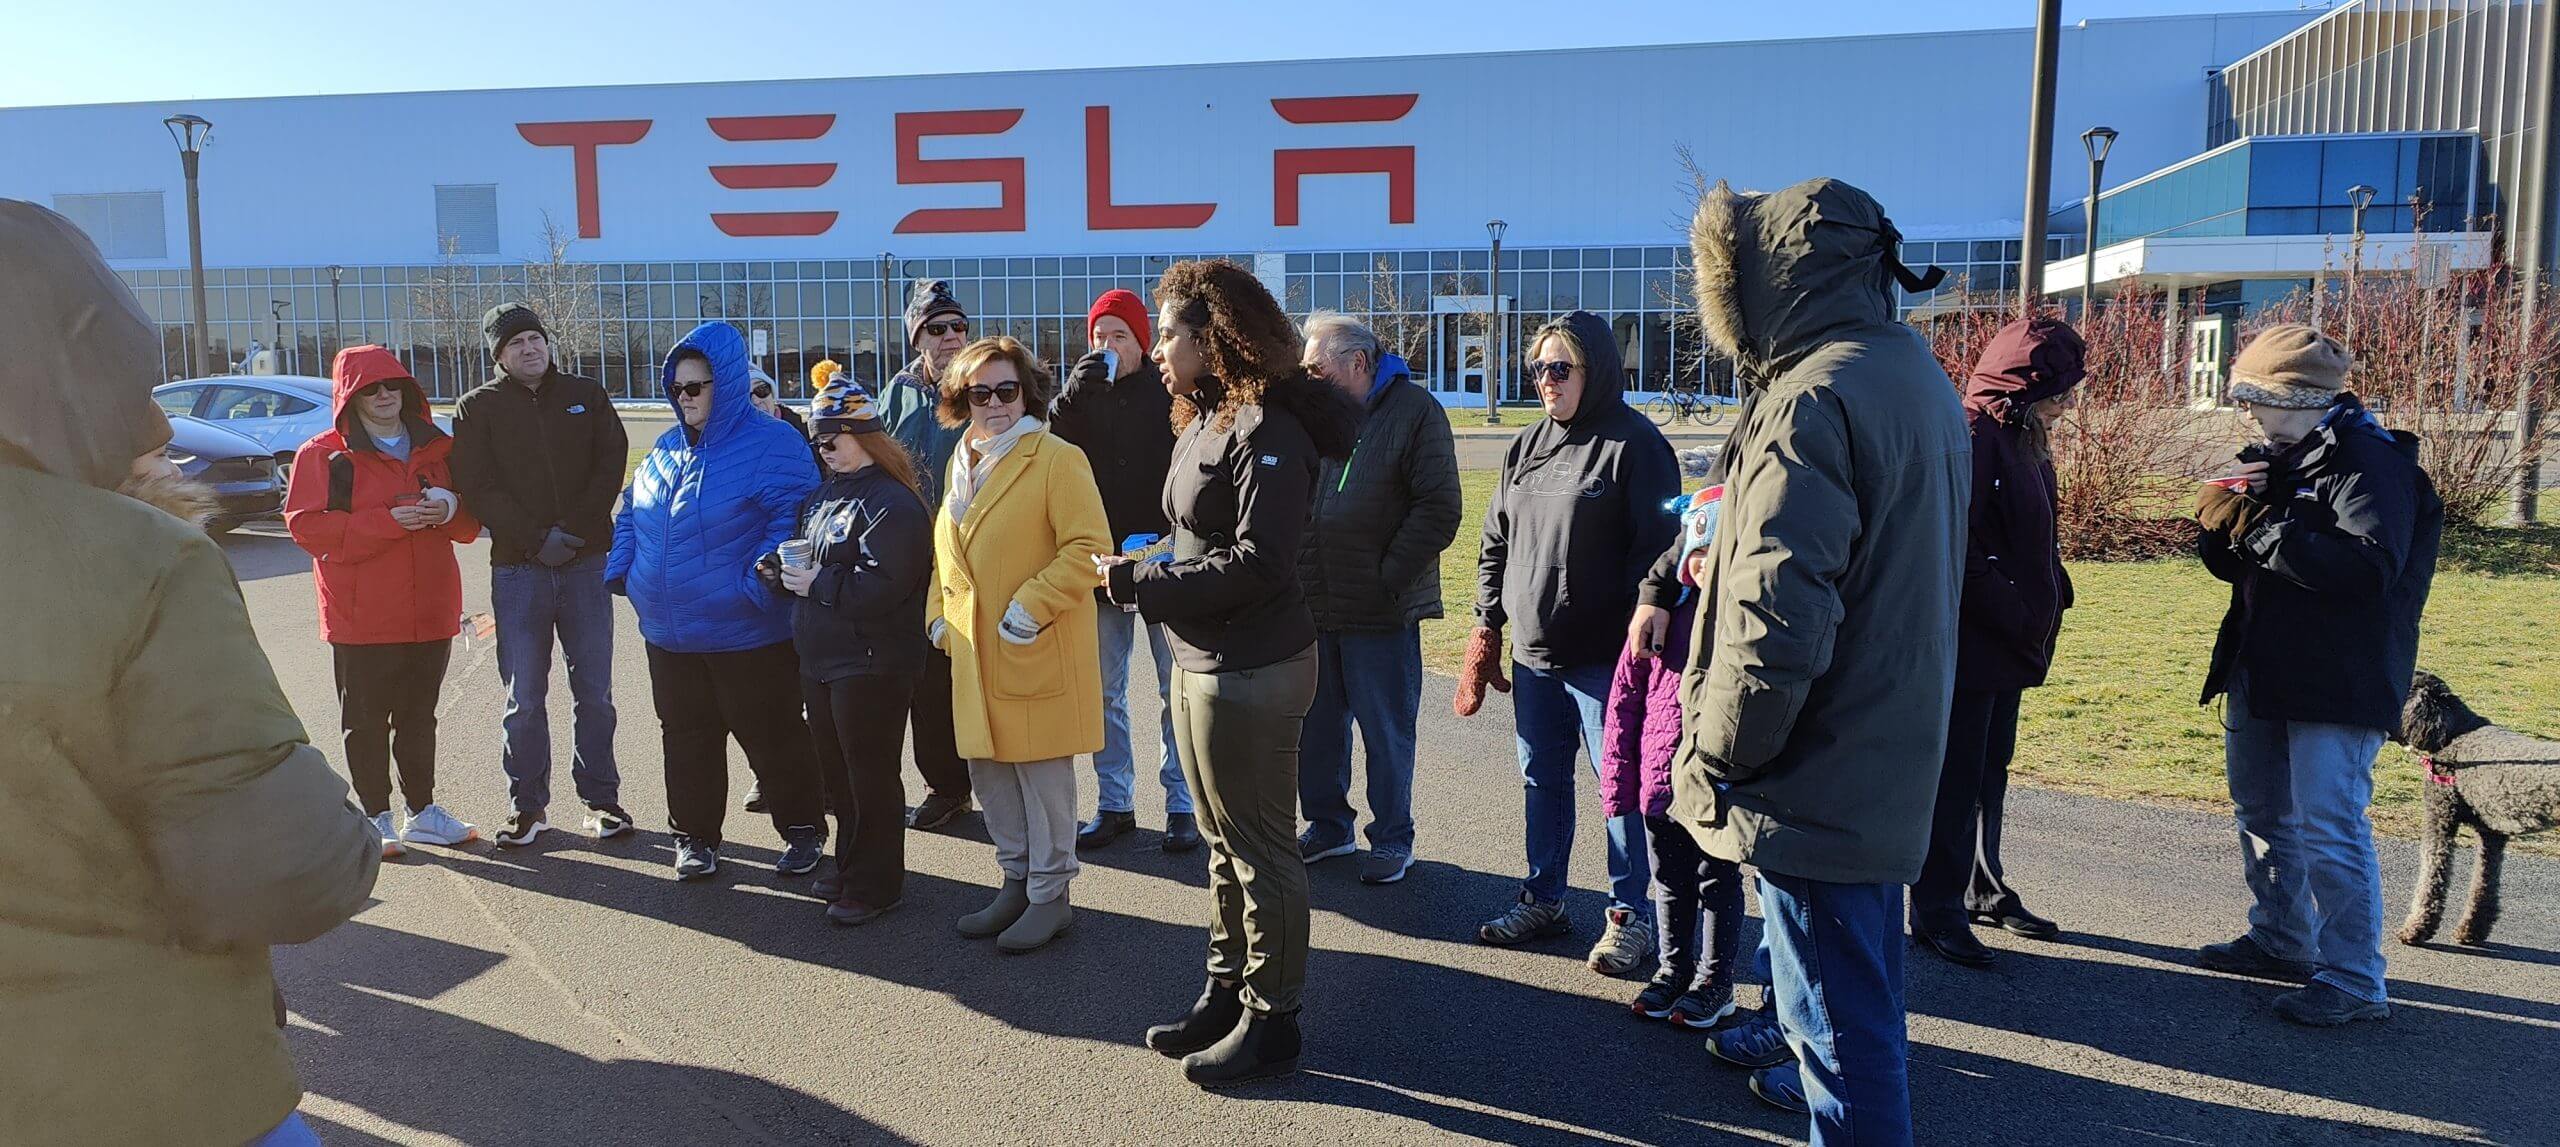 Tesla-Besitzer geben den örtlichen Gemeinden für die Feiertage etwas zurück